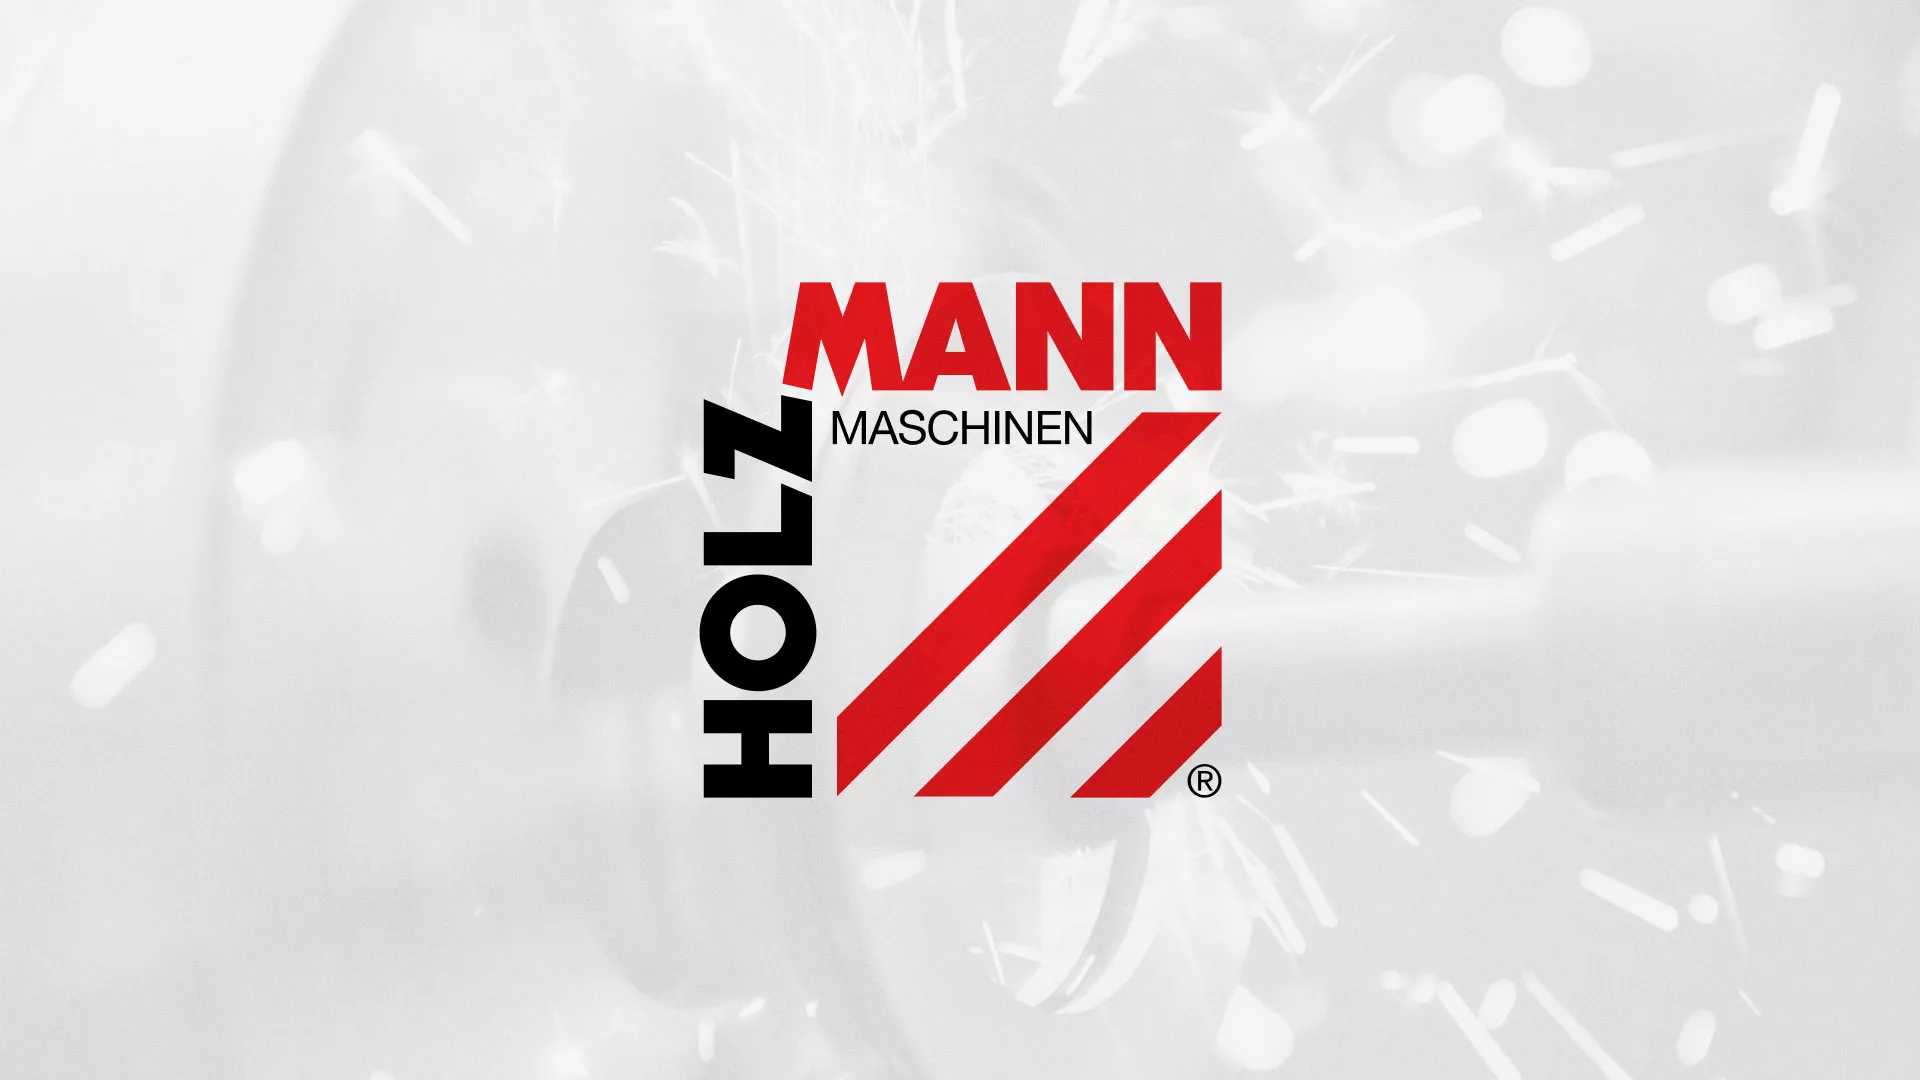 Создание сайта компании «HOLZMANN Maschinen GmbH» в Элисте